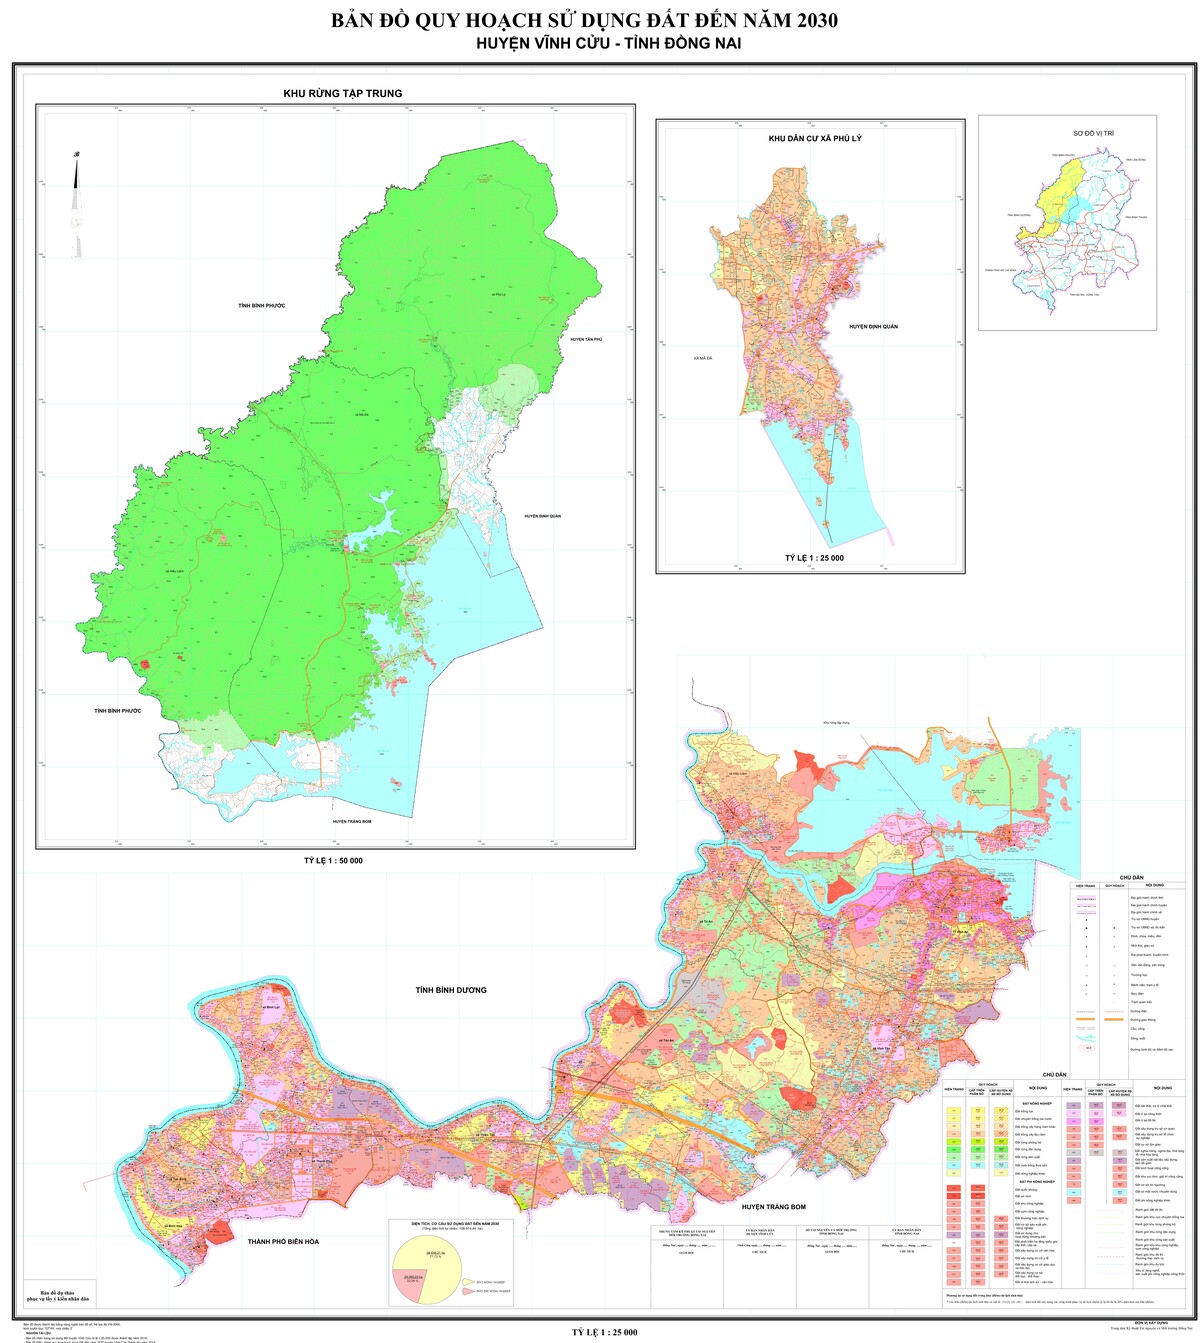 Bản đồ quy hoạch huyện Vĩnh Cửu, tỉnh Đồng Nai đến năm 2030